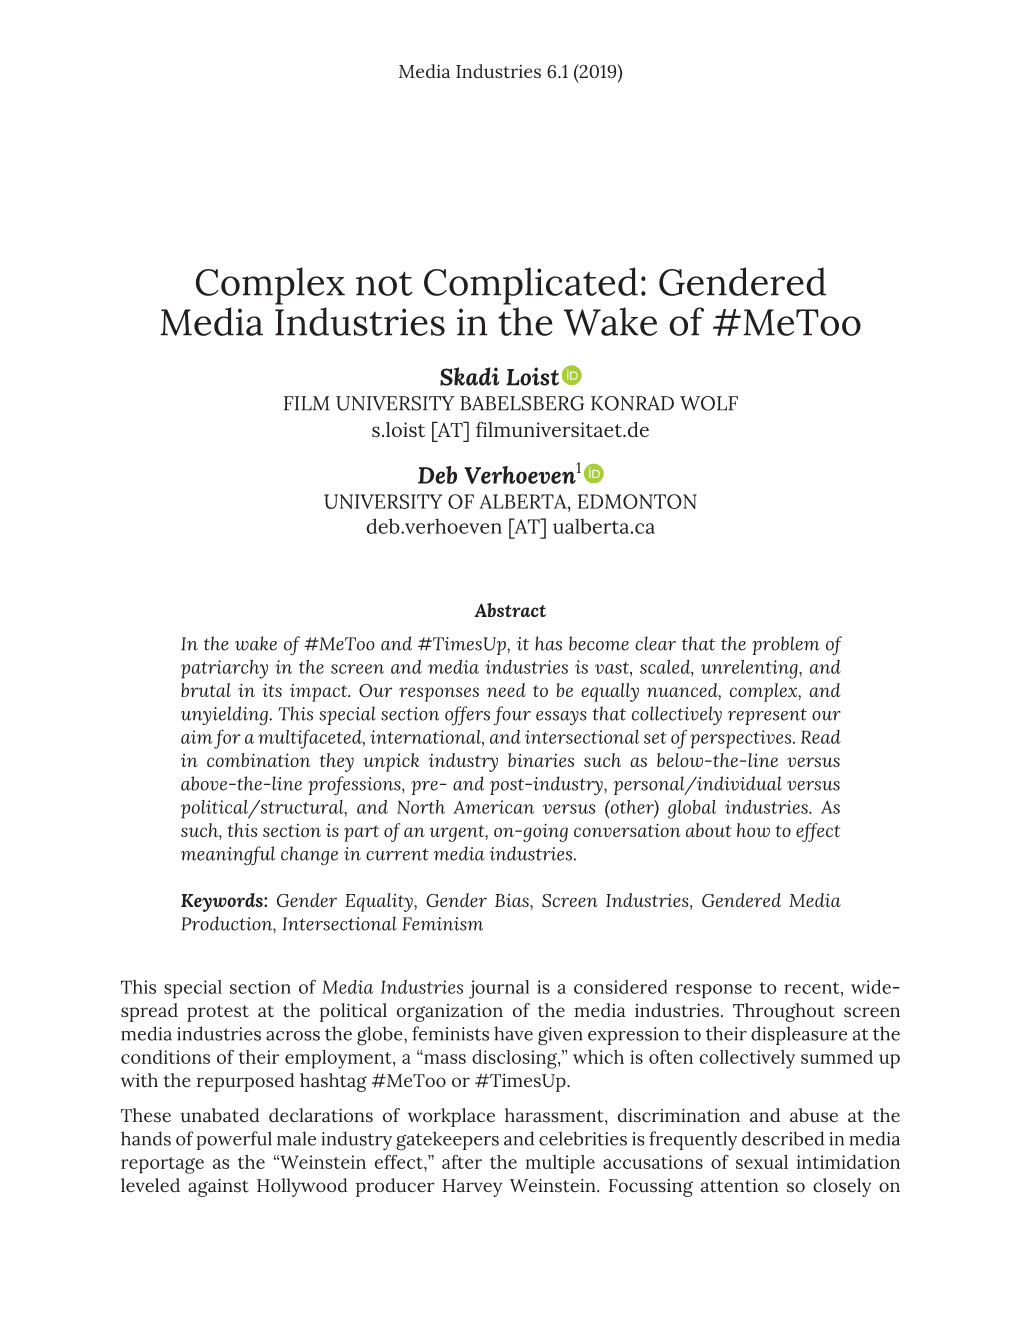 Gendered Media Industries in the Wake of #Metoo